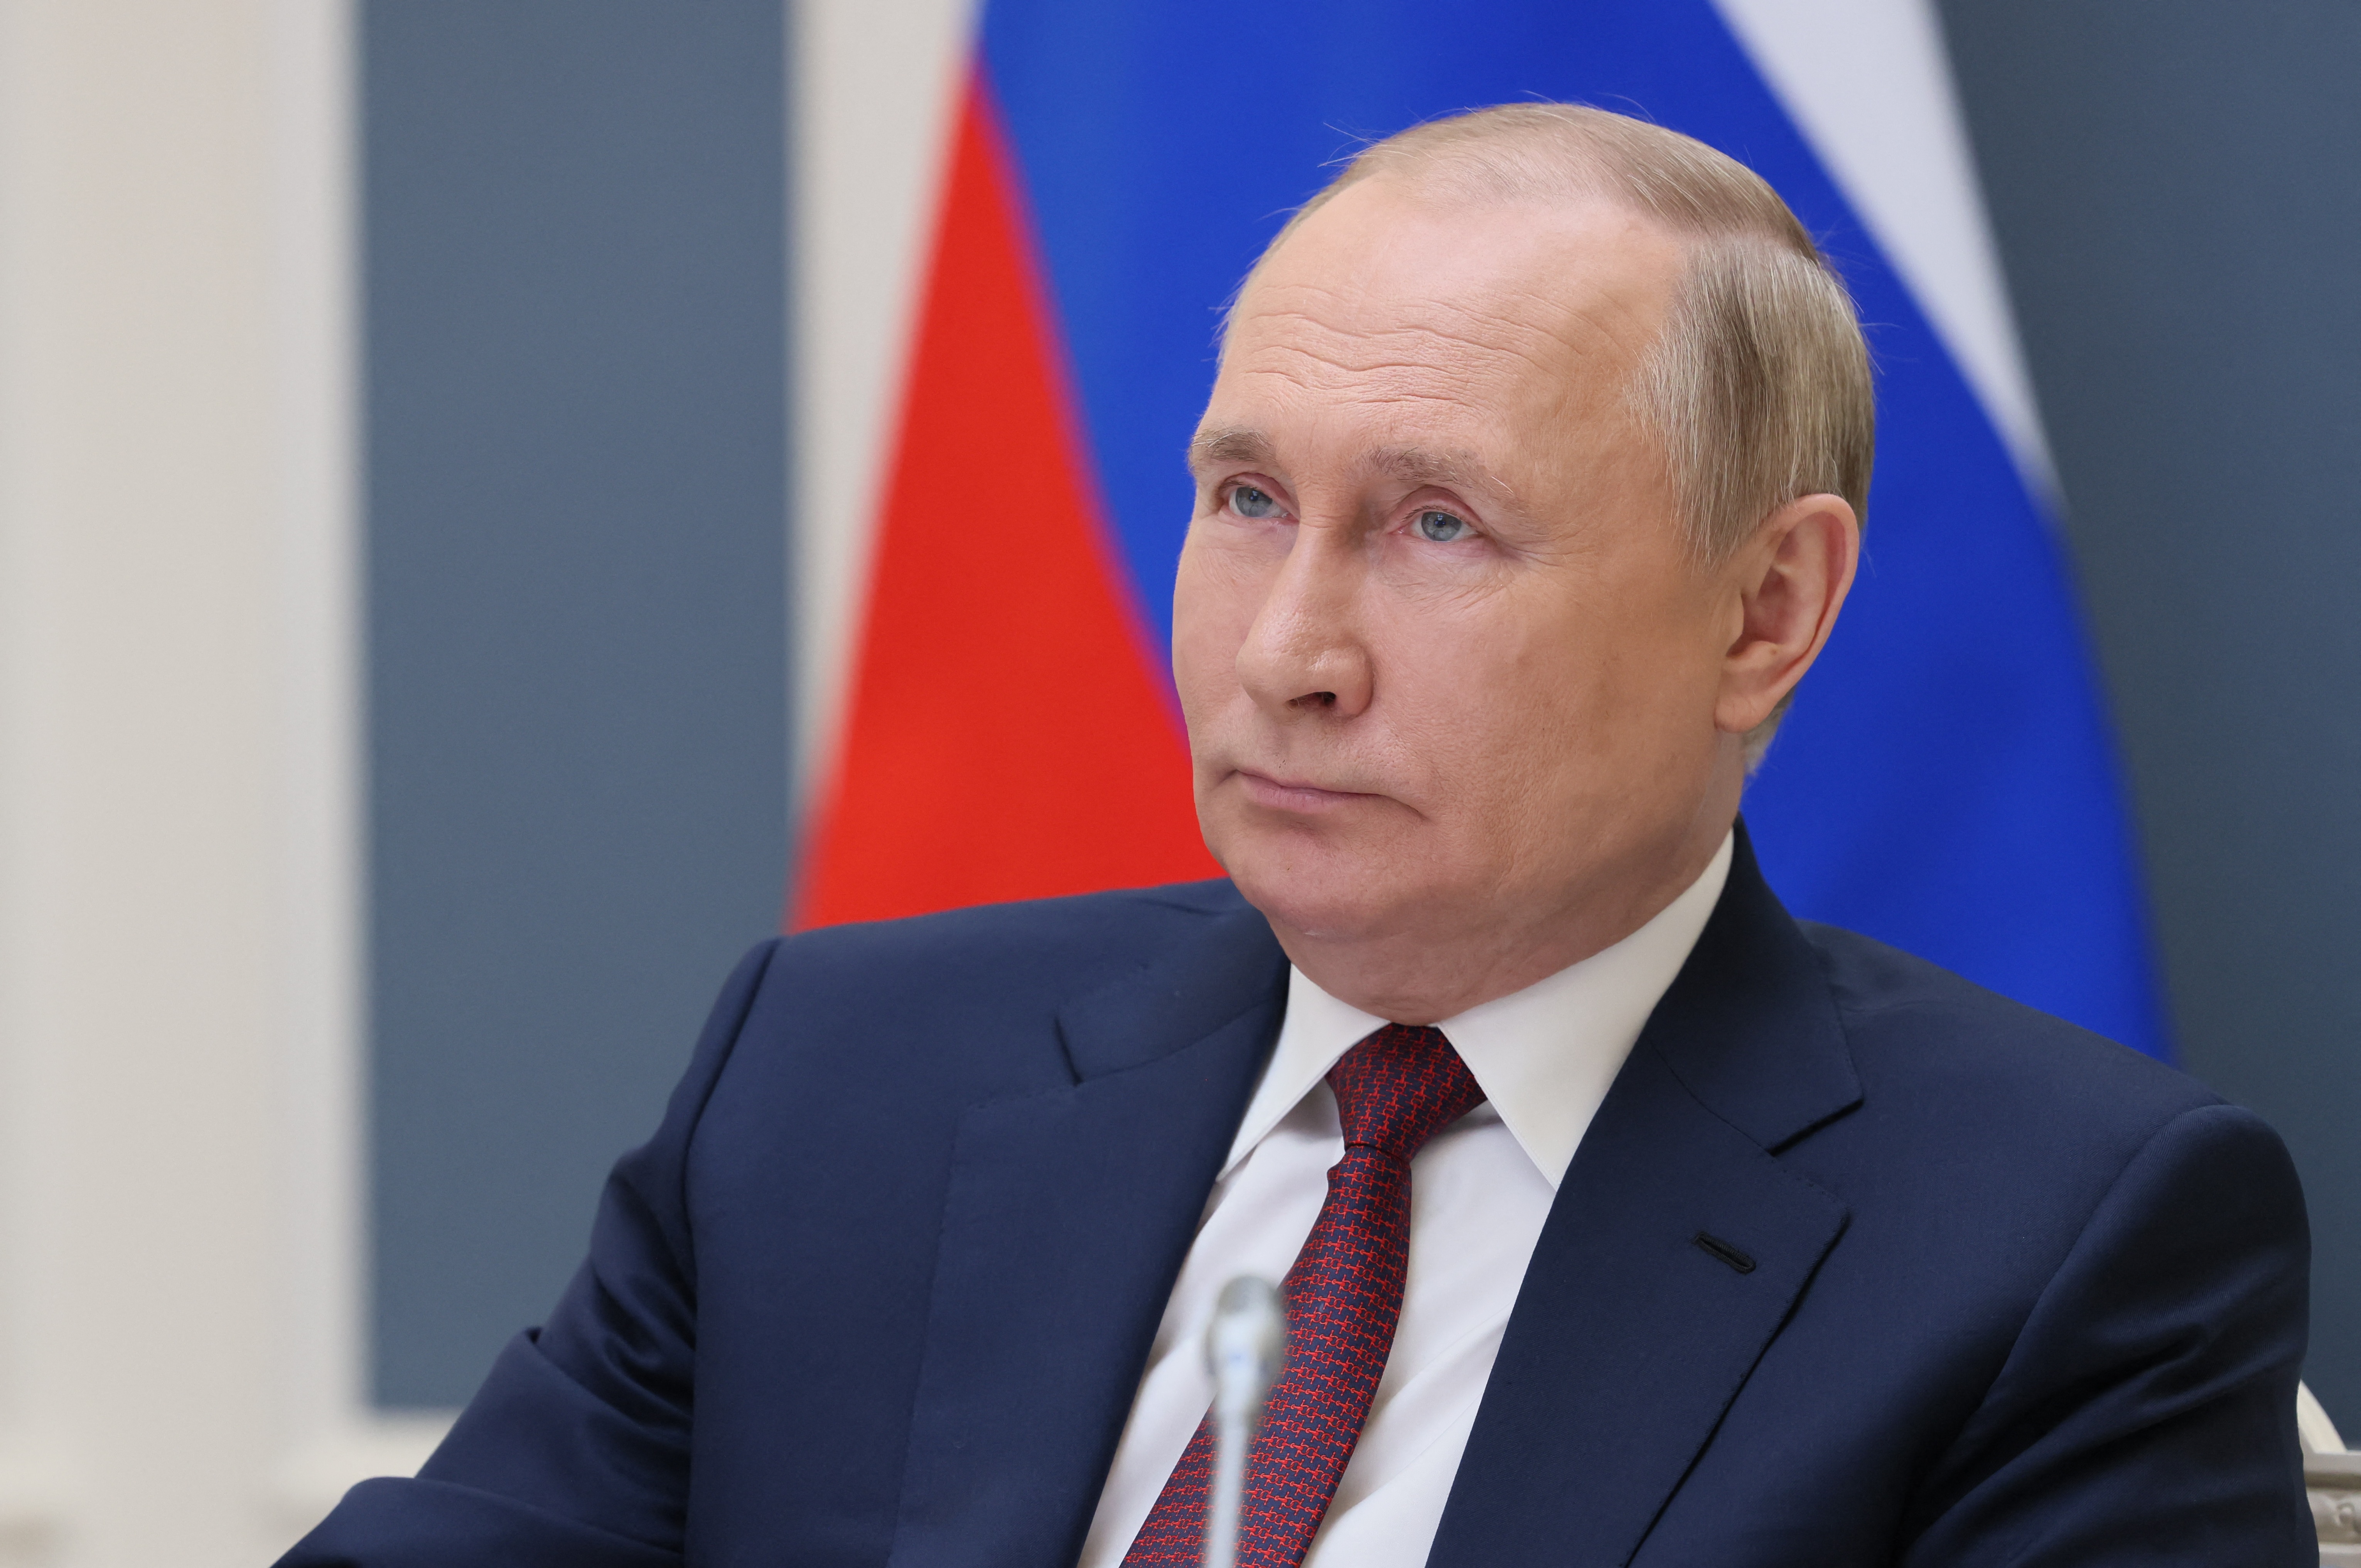 Putin afirmó que acusaciones contra Rusia sobre una crisis alimentaria son “infundadas”